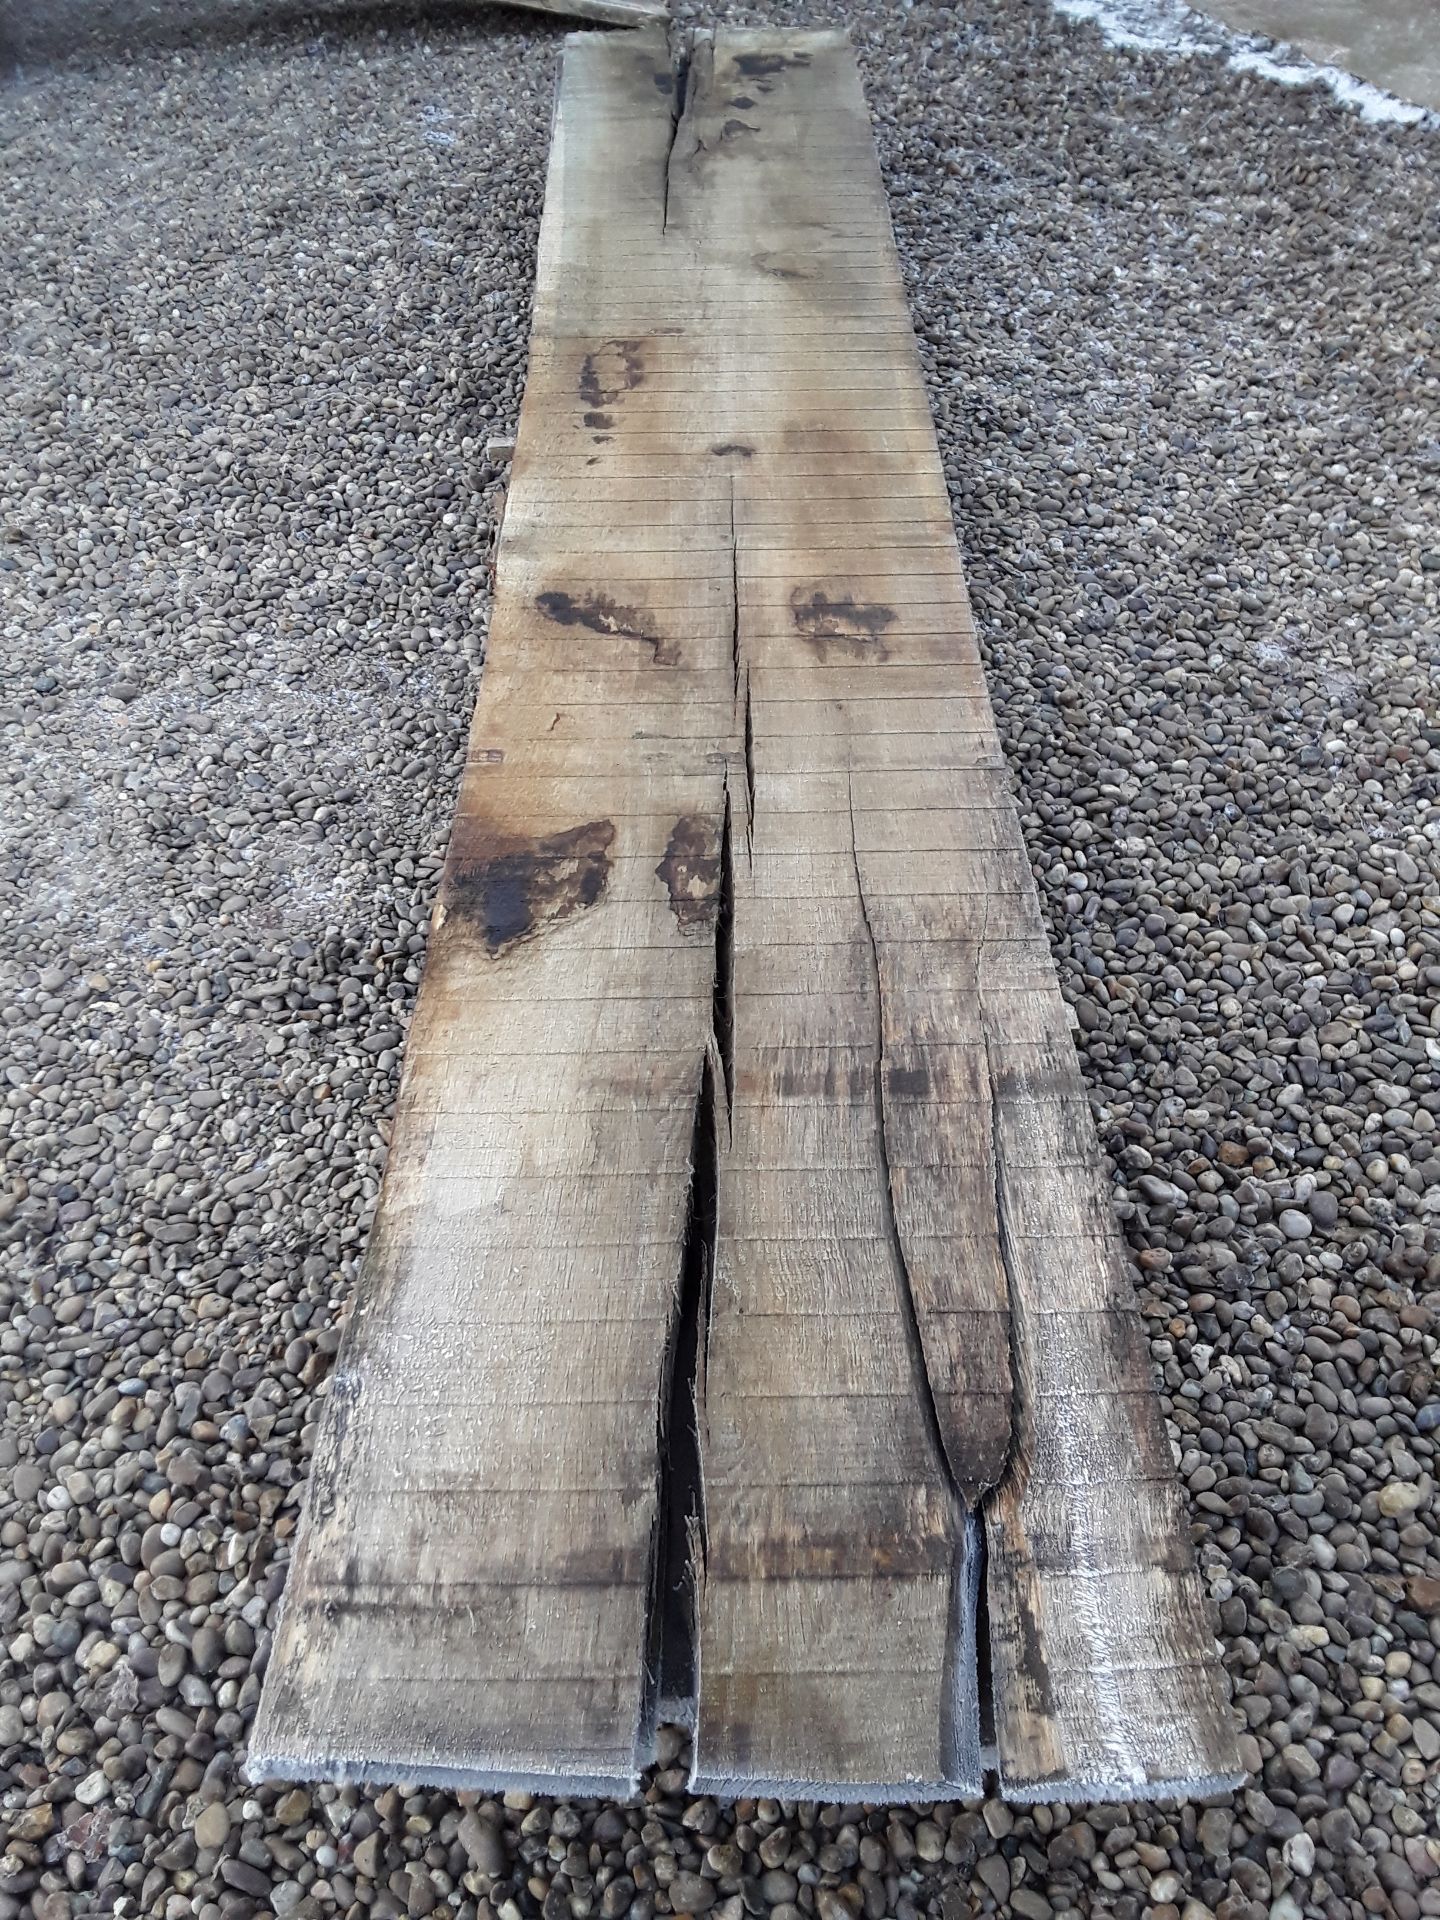 10 x Hardwood Timber Sawn Seasoned English Oak Waney Edge / Live Edge Boards/ Planks - Image 5 of 15